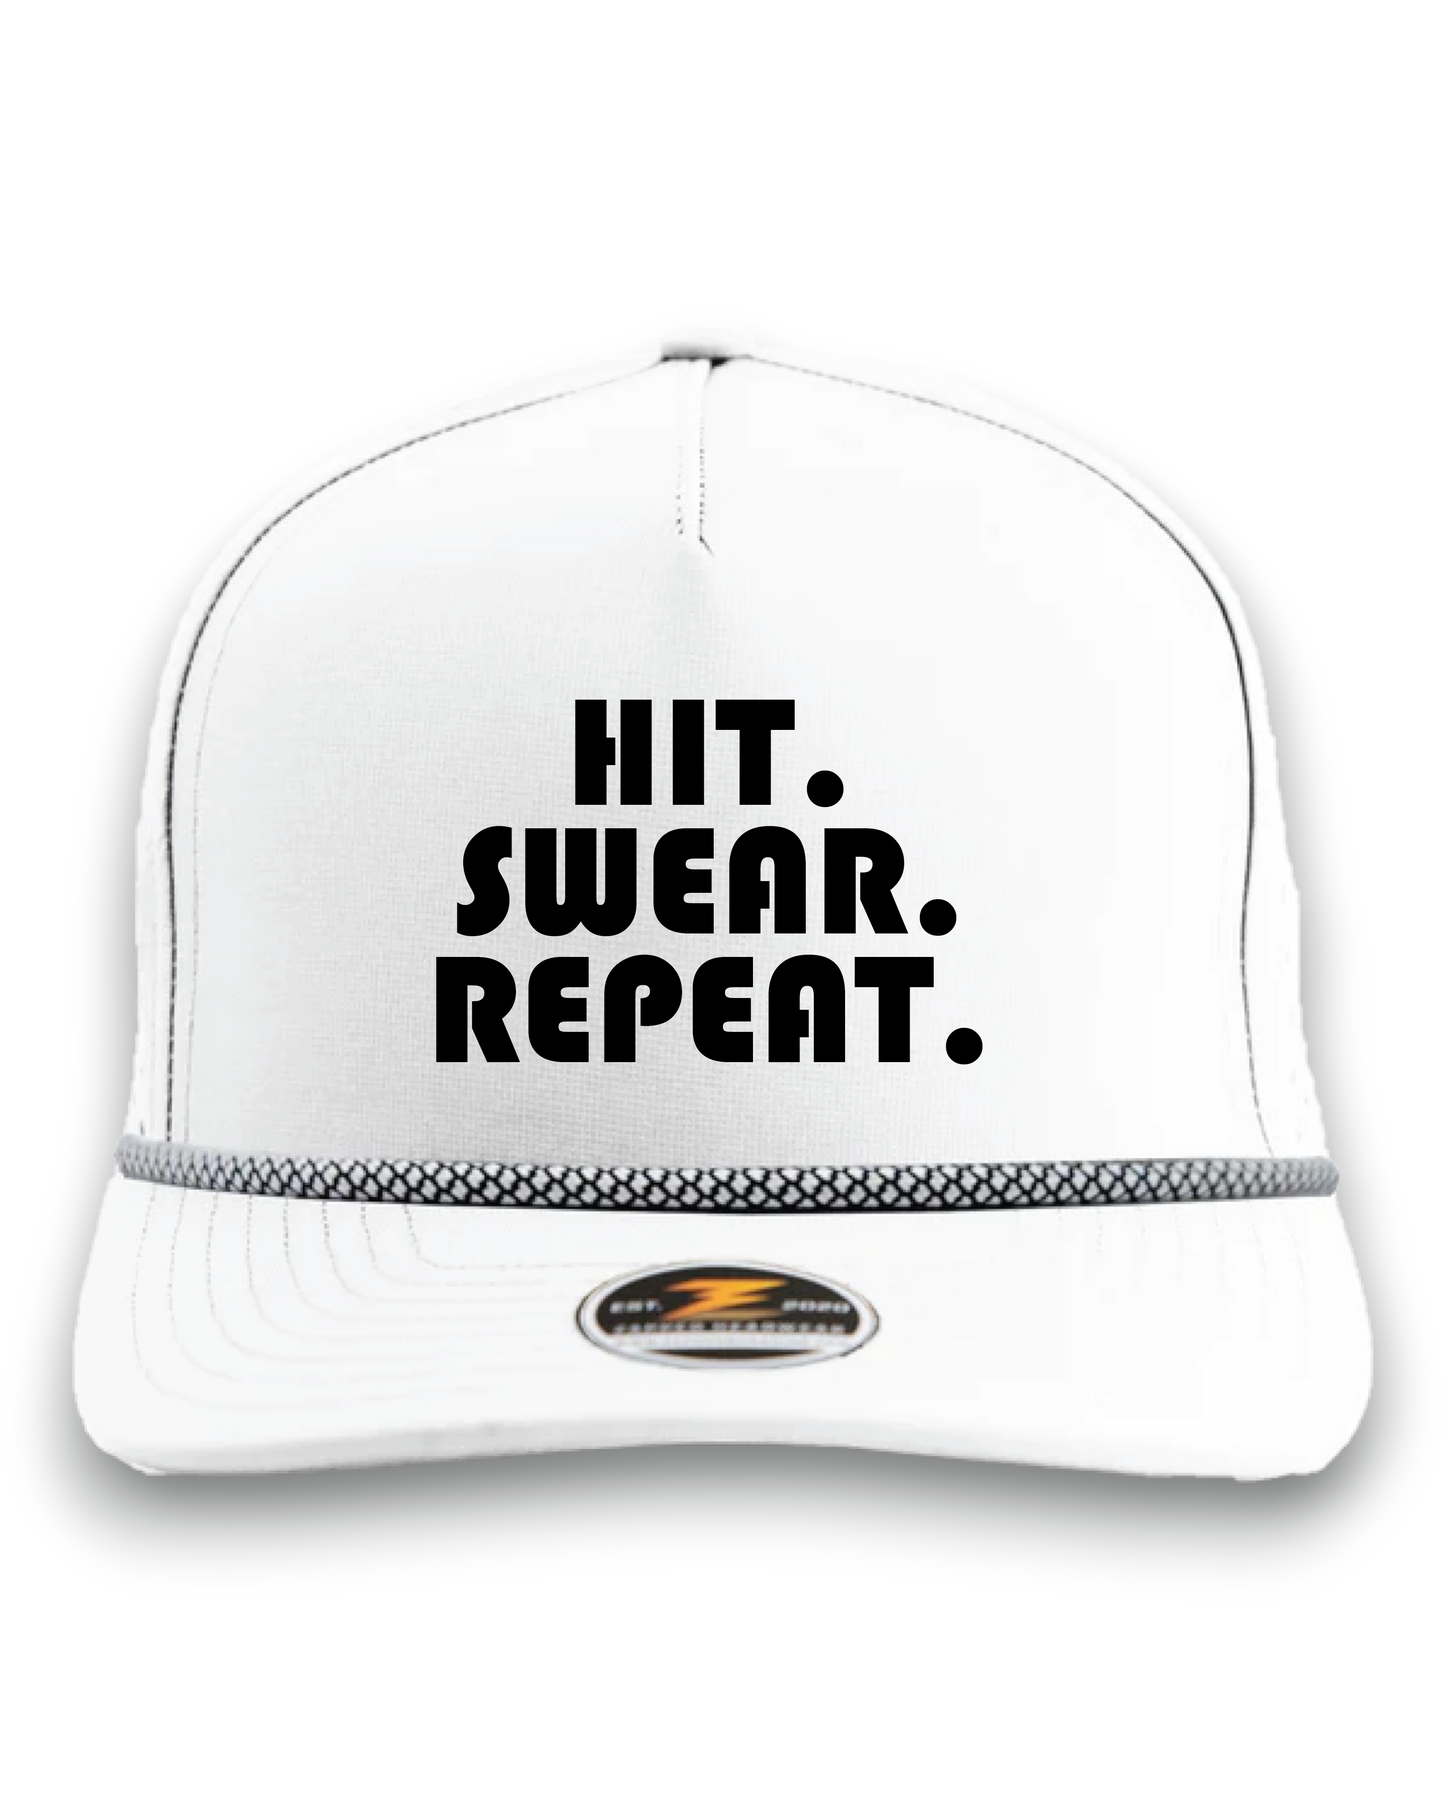 Hit. Swear. Repeat - Premium Water Resistant Rope Hat